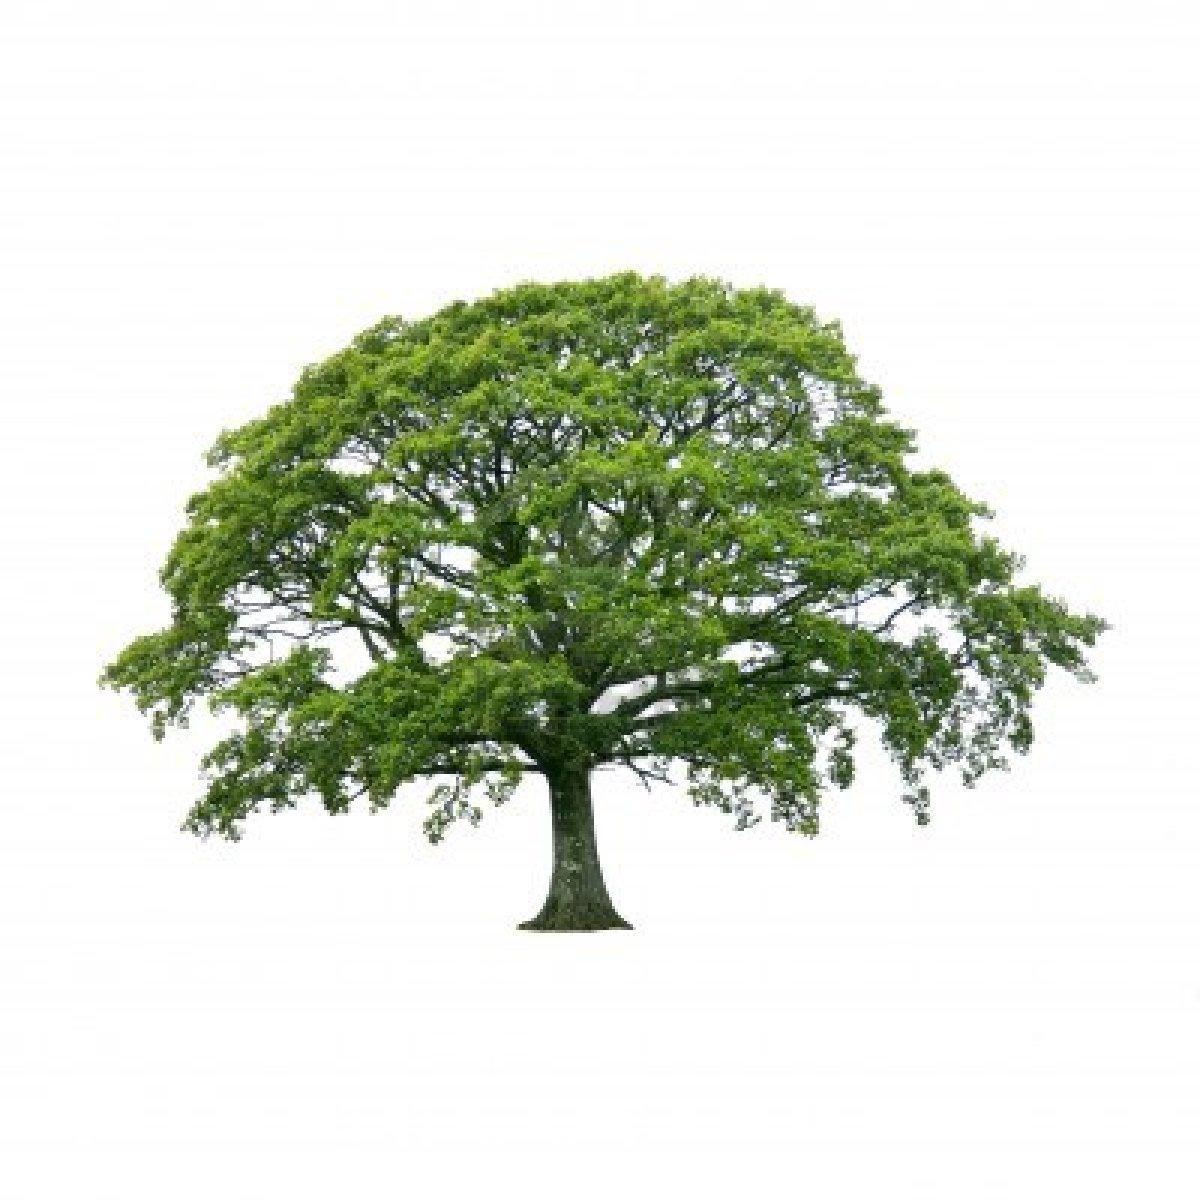 590x350px 69.71 KB Oak Tree